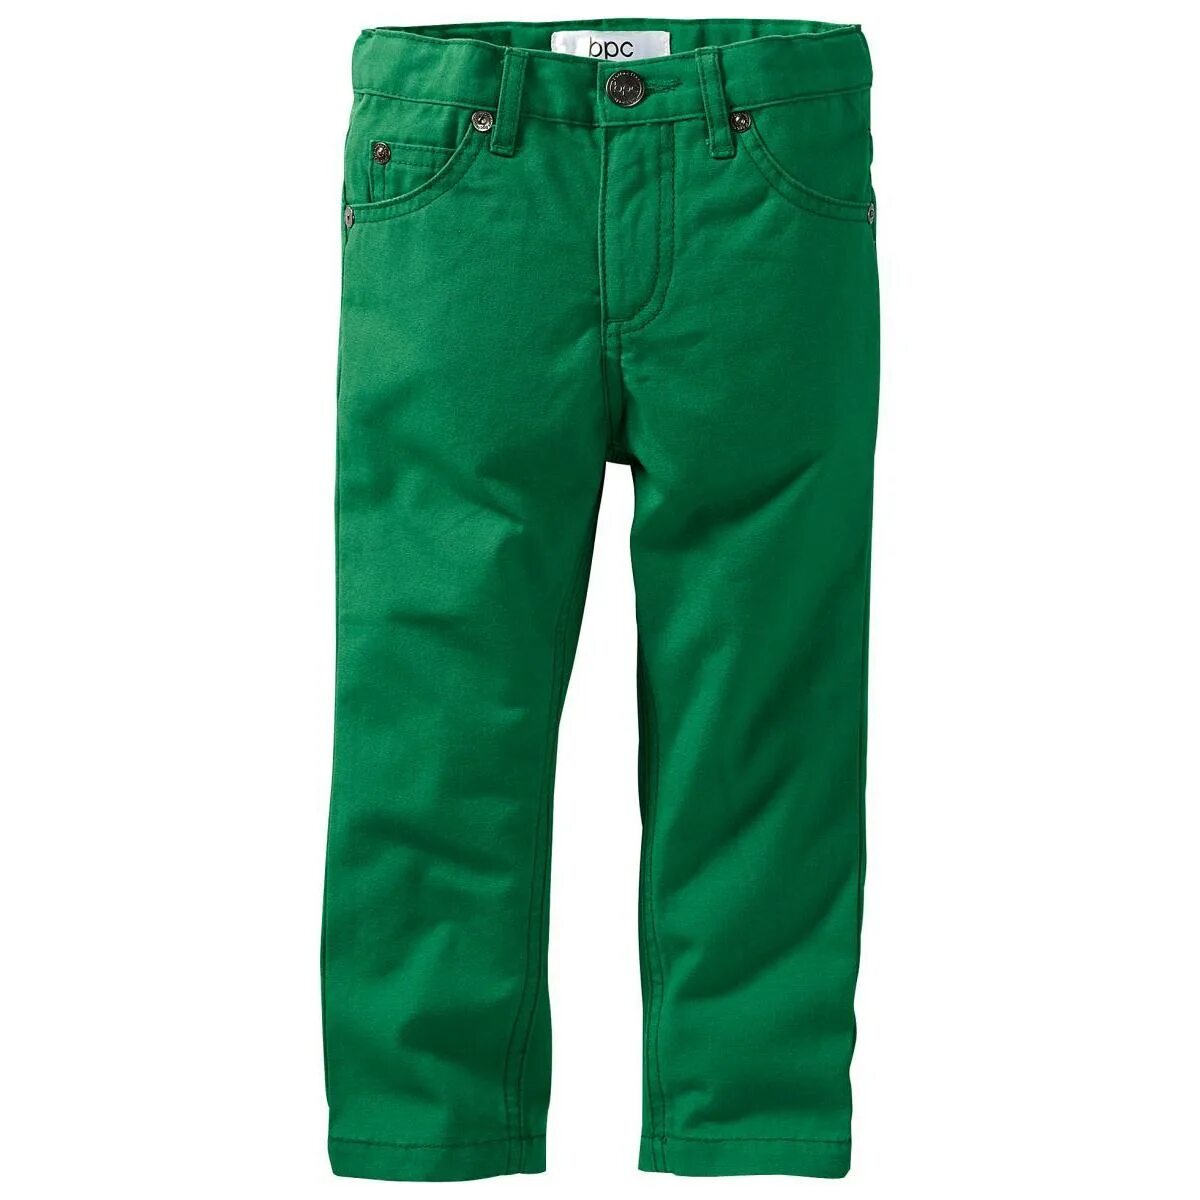 Штаны bonprix Rainbow зеленые. Урюк зеленый. Зеленые брюки для мальчика. Салатовые брюки для мальчика. Купить брюки омск